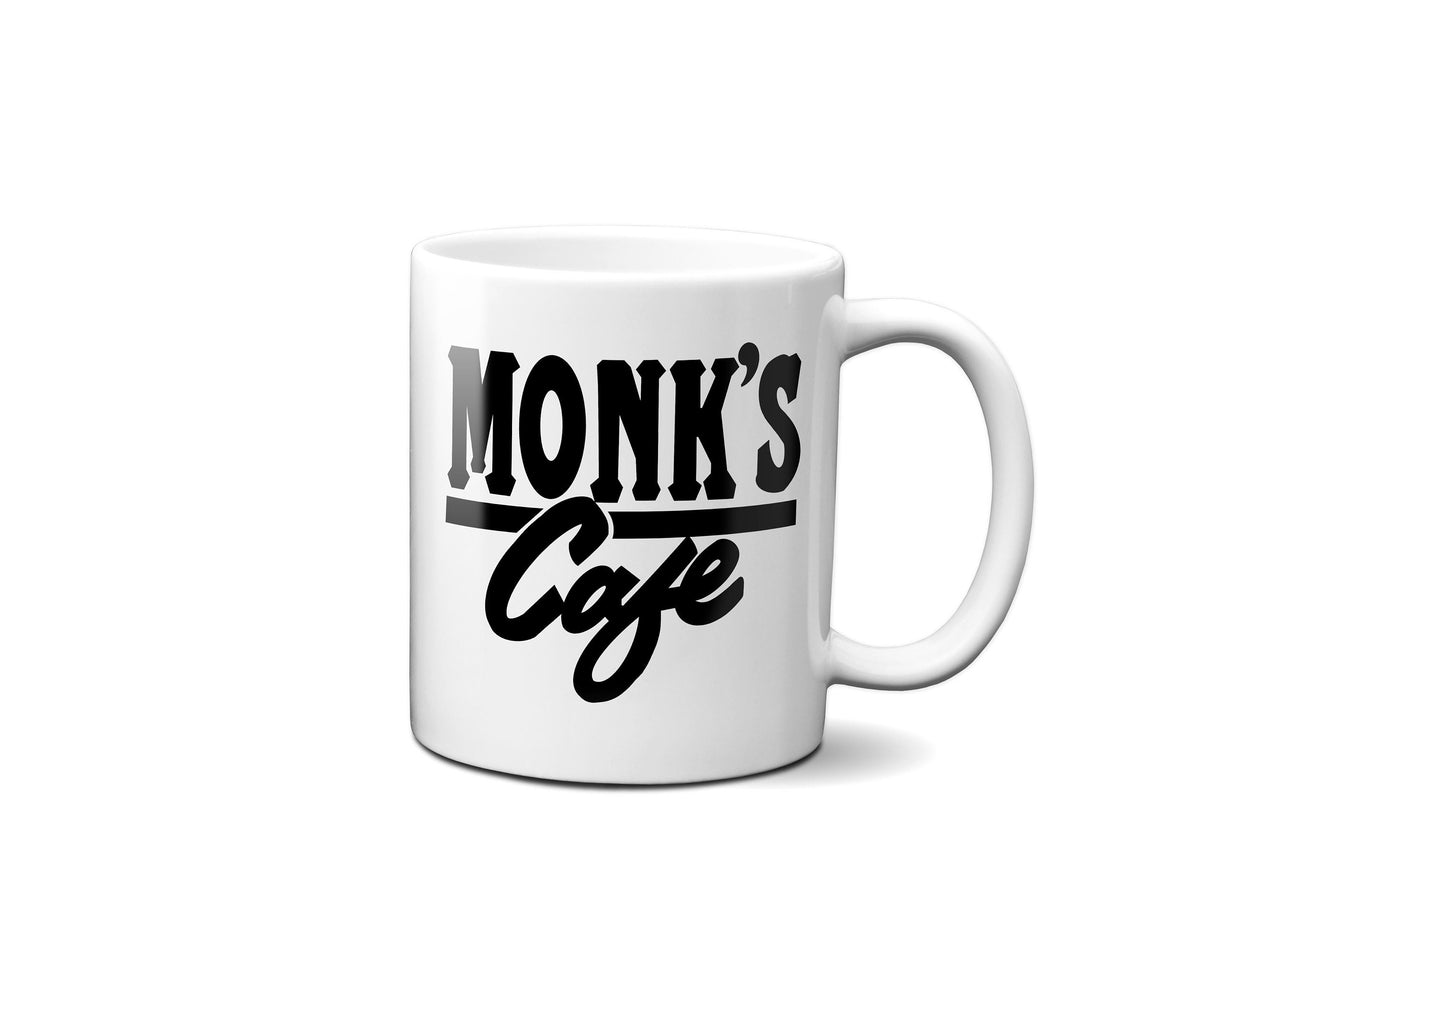 Monk's Diner Mug | Seinfeld Restaurant Mug | Seinfeld Mug